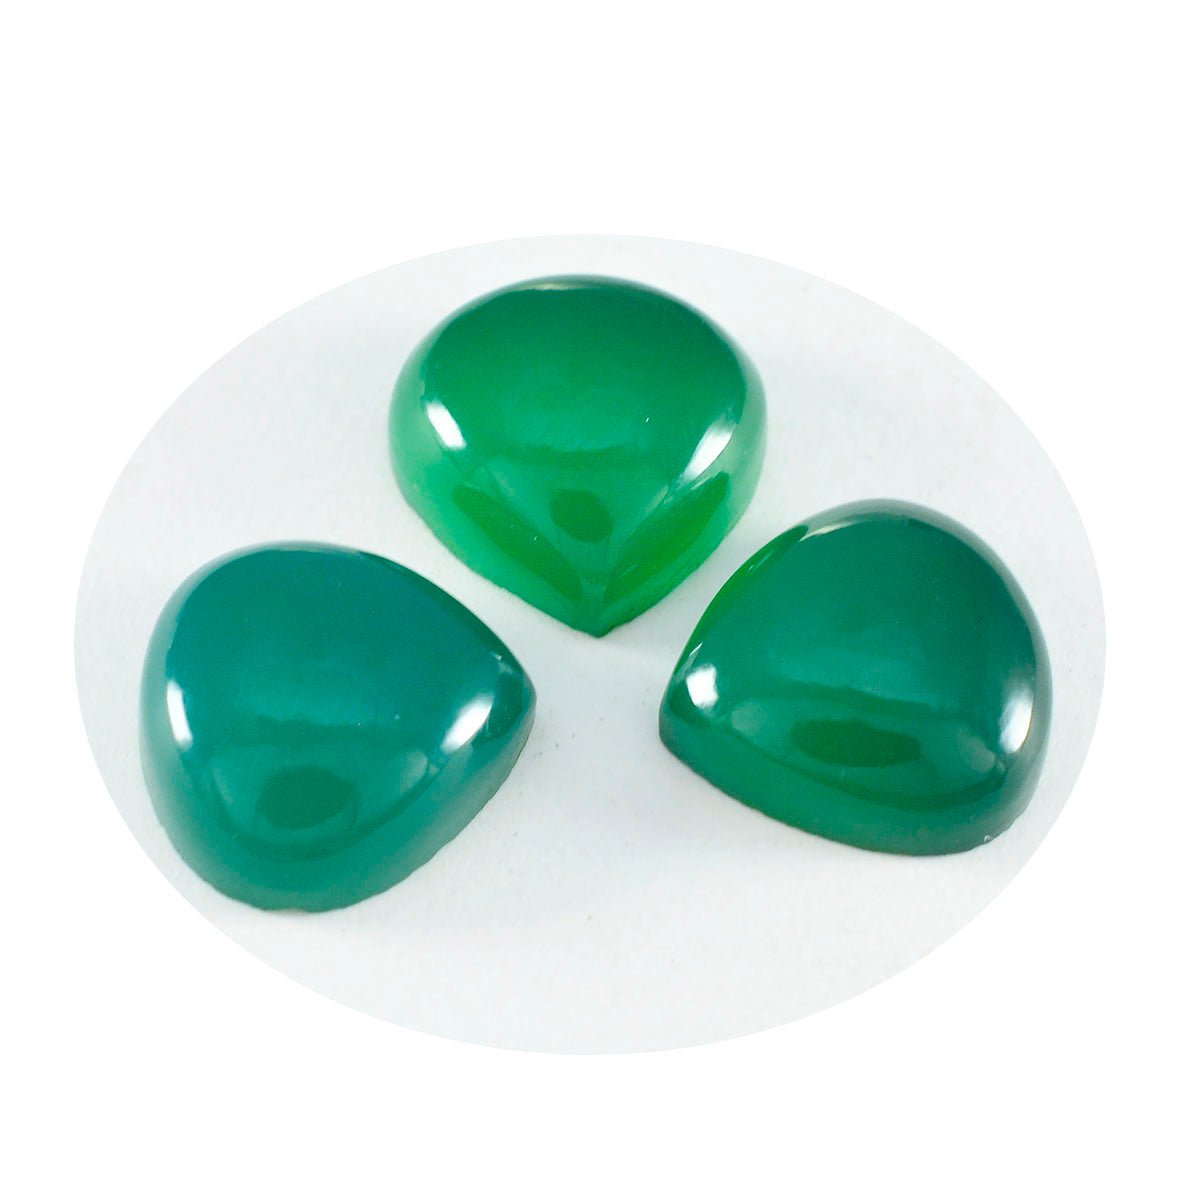 Riyogems 1 Stück grüner Onyx-Cabochon, 13 x 13 mm, Herzform, hervorragende Qualität, lose Edelsteine